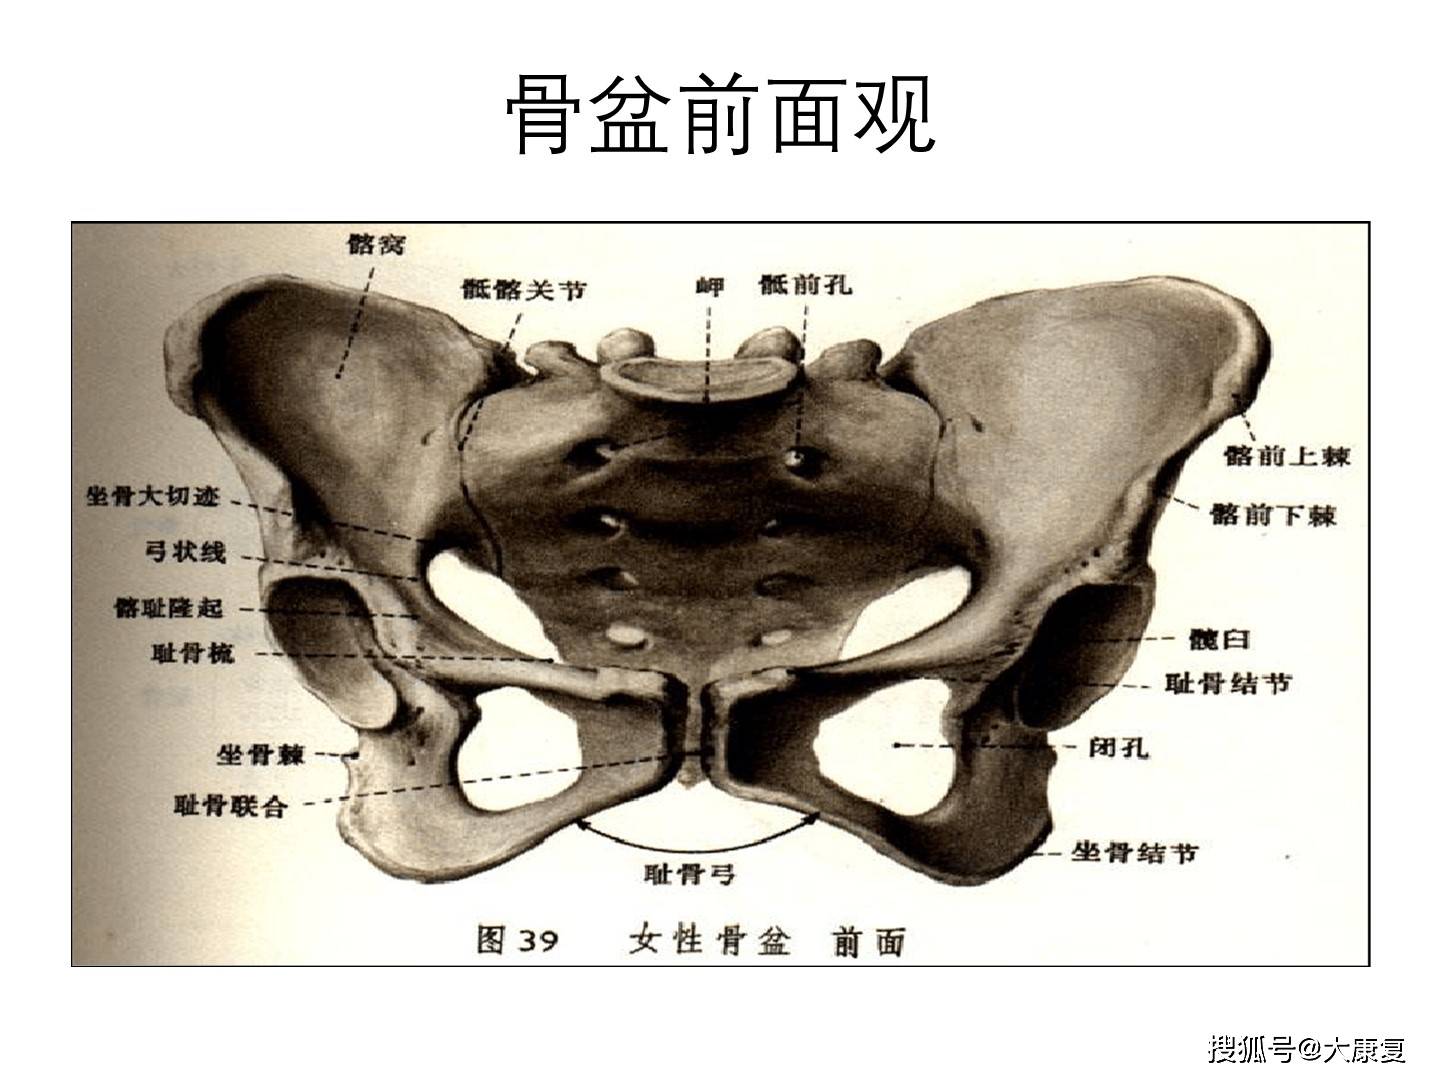 耻骨结节的真人定位图图片